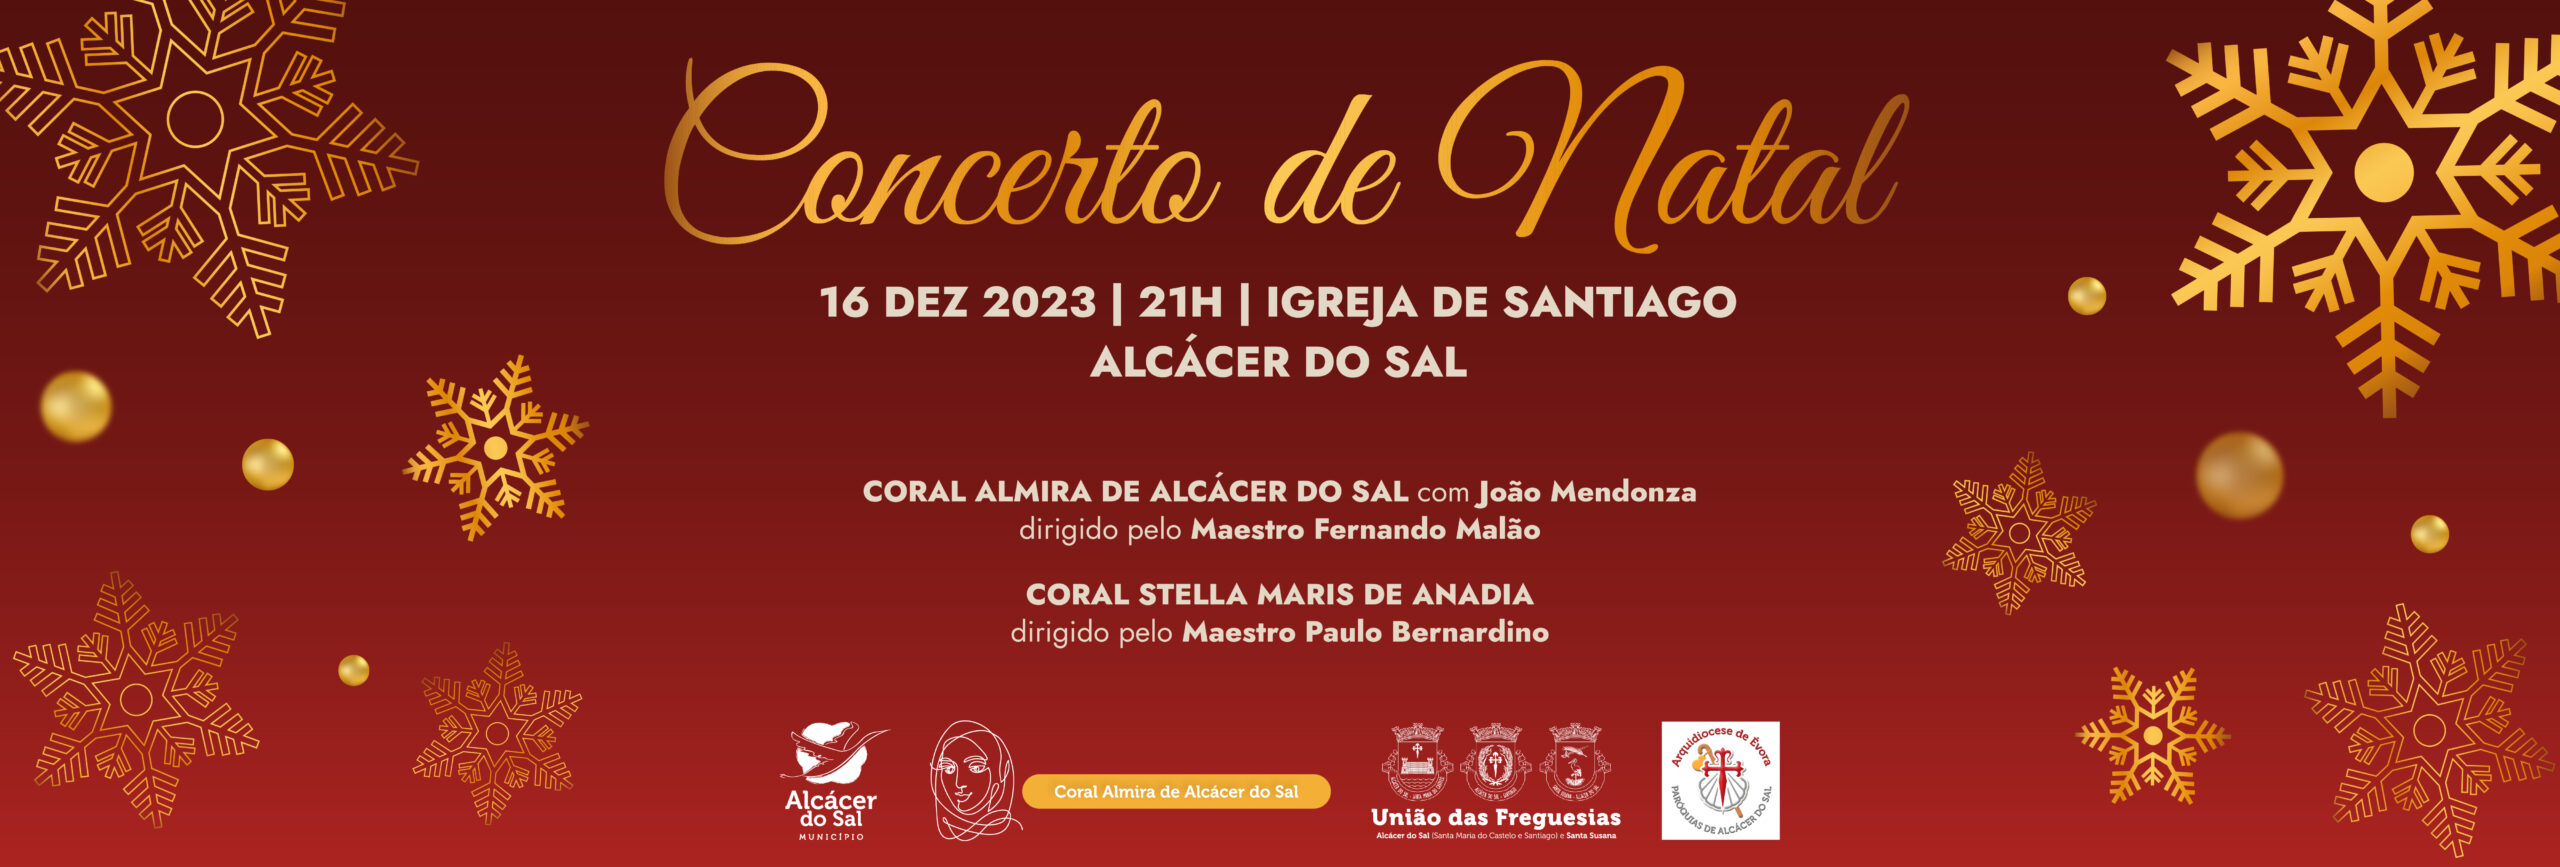 Igreja de Santiago acolhe concerto de Natal organizado pela Câmara Municipal no dia 16 de dezembro